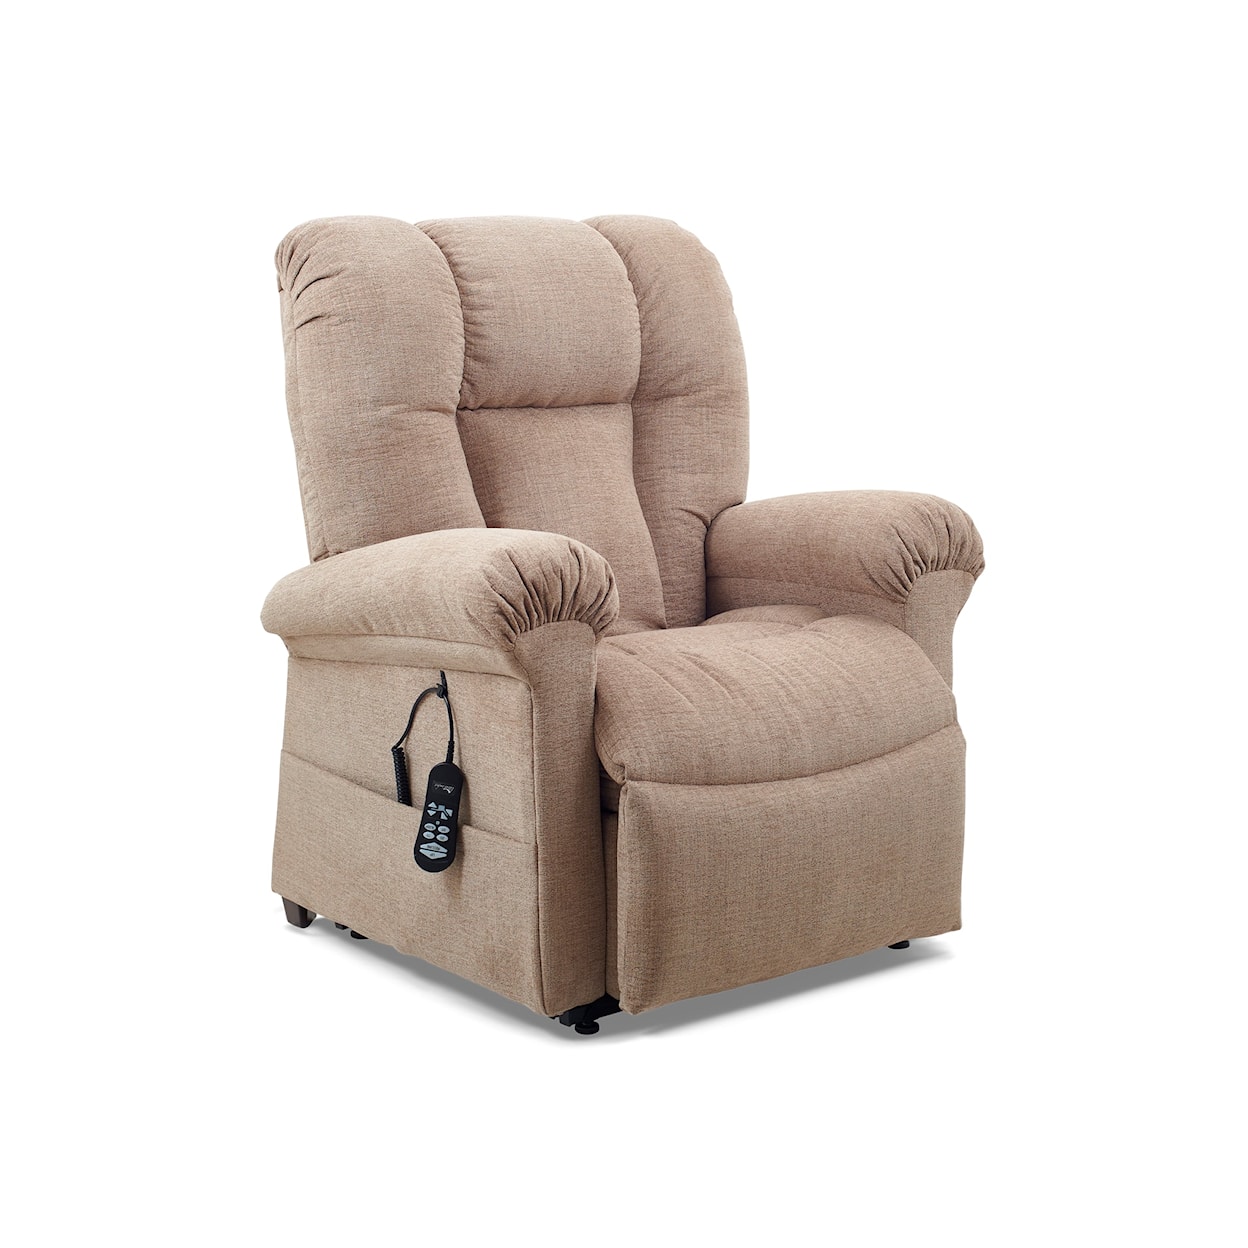 UltraComfort Sol Sol Lift Chair w/ Heat/Massage